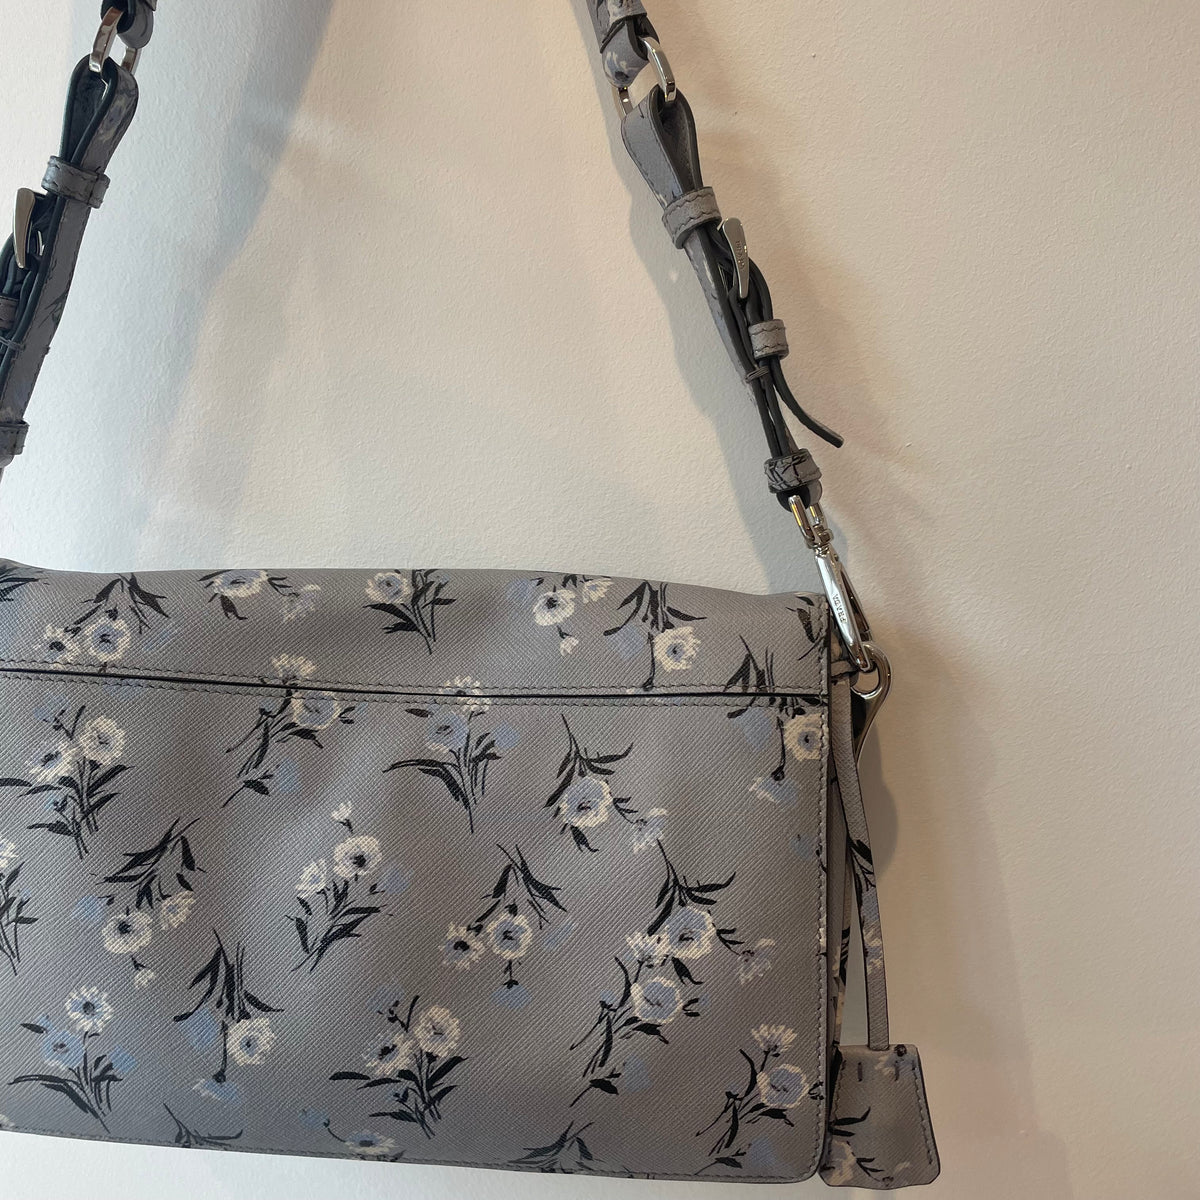 Prada floral print saffiano leather bag Grey/blue O/S